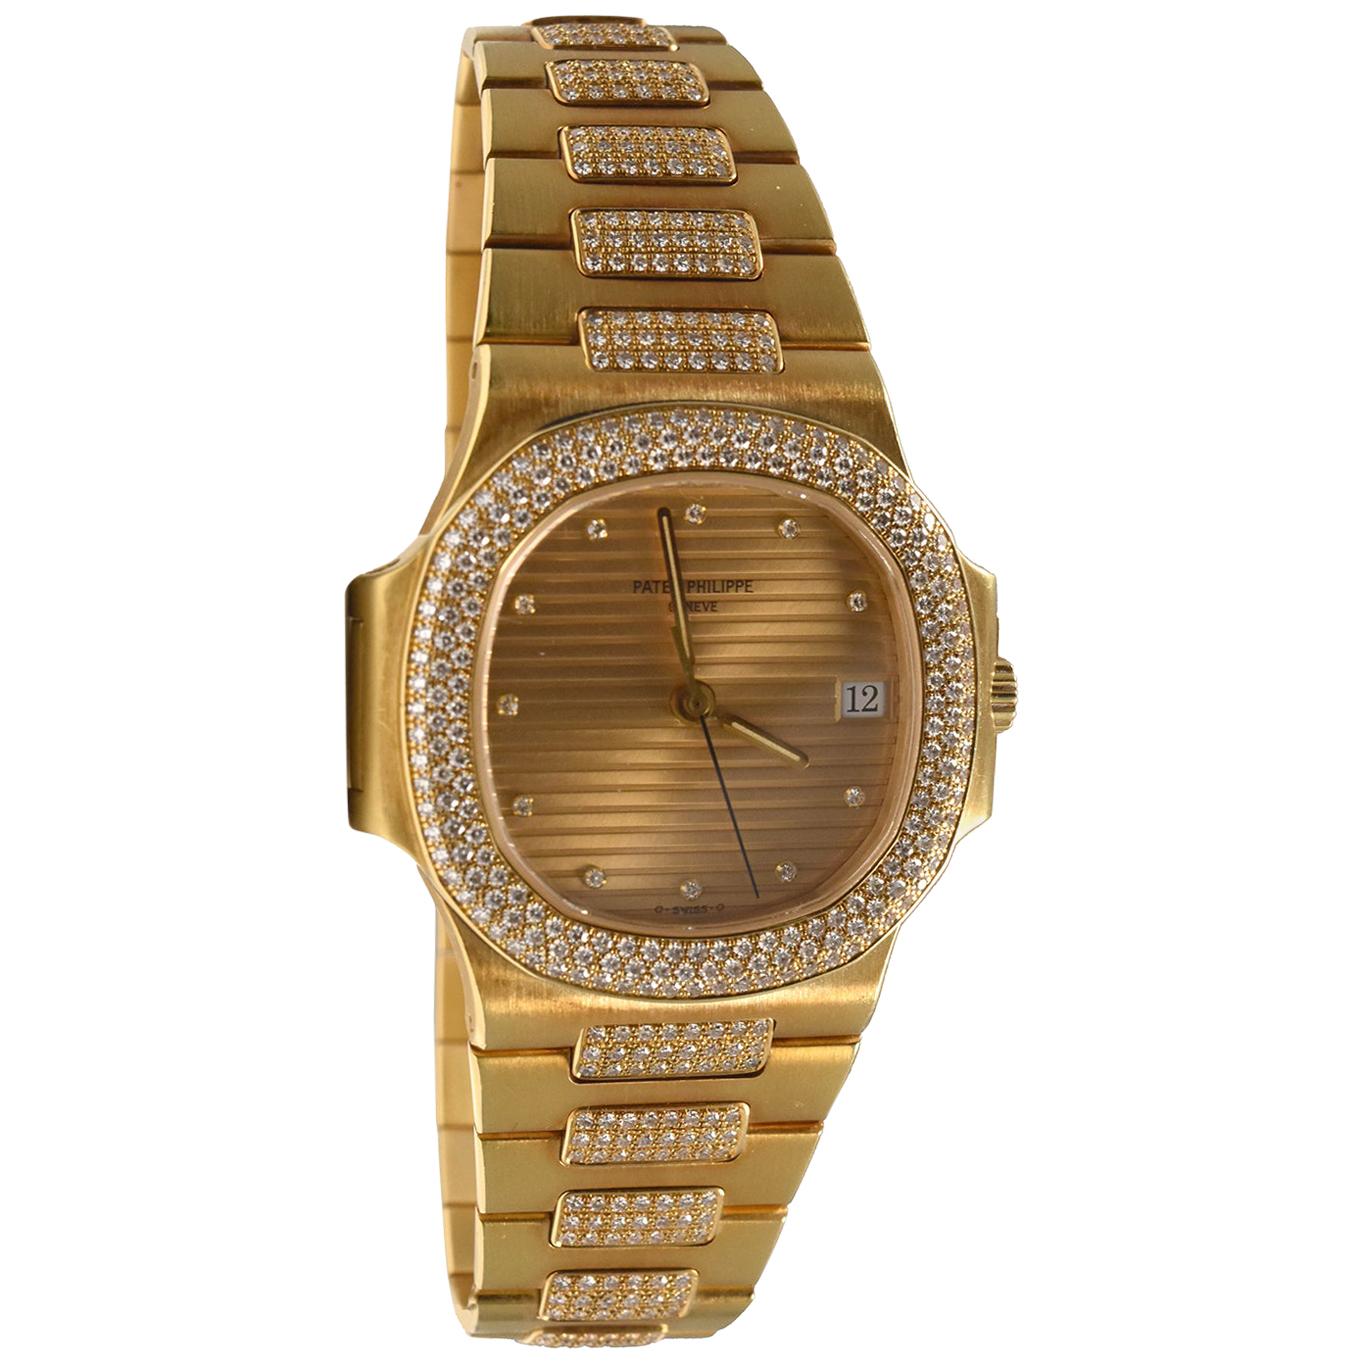 Patek Philippe Nautilus 3800/1 in 18k Yellow Gold with Custom Diamond Watch